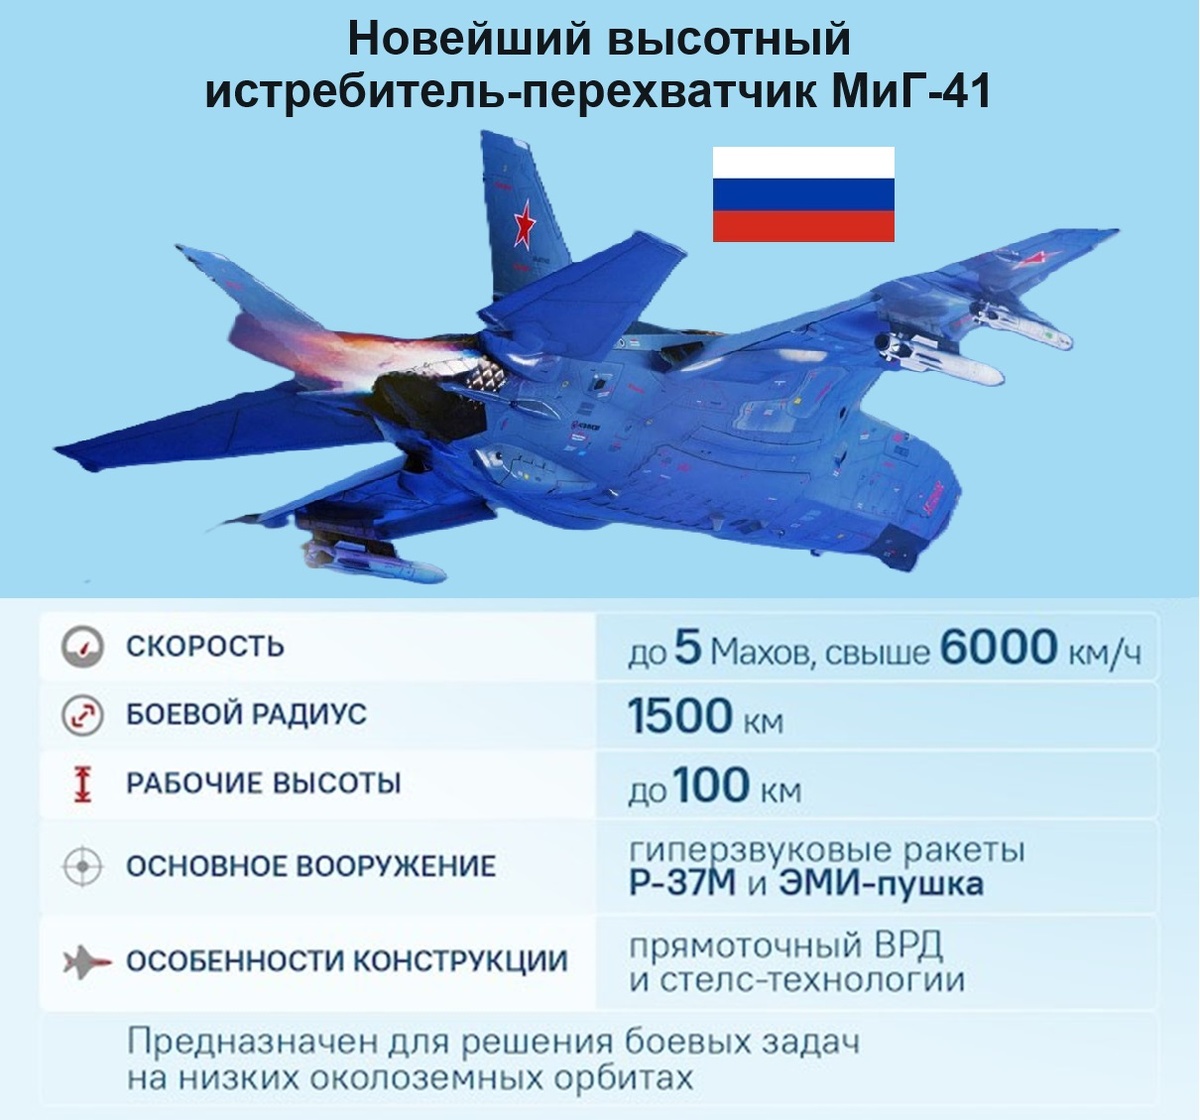 На фото: возможный вид новейшего истребителя-перехватчика 6-го поколения МиГ-41 производимого в России. Источник: https://rostag.ru/armija/rossijskij-mig-41-istrebitel-budushhego/